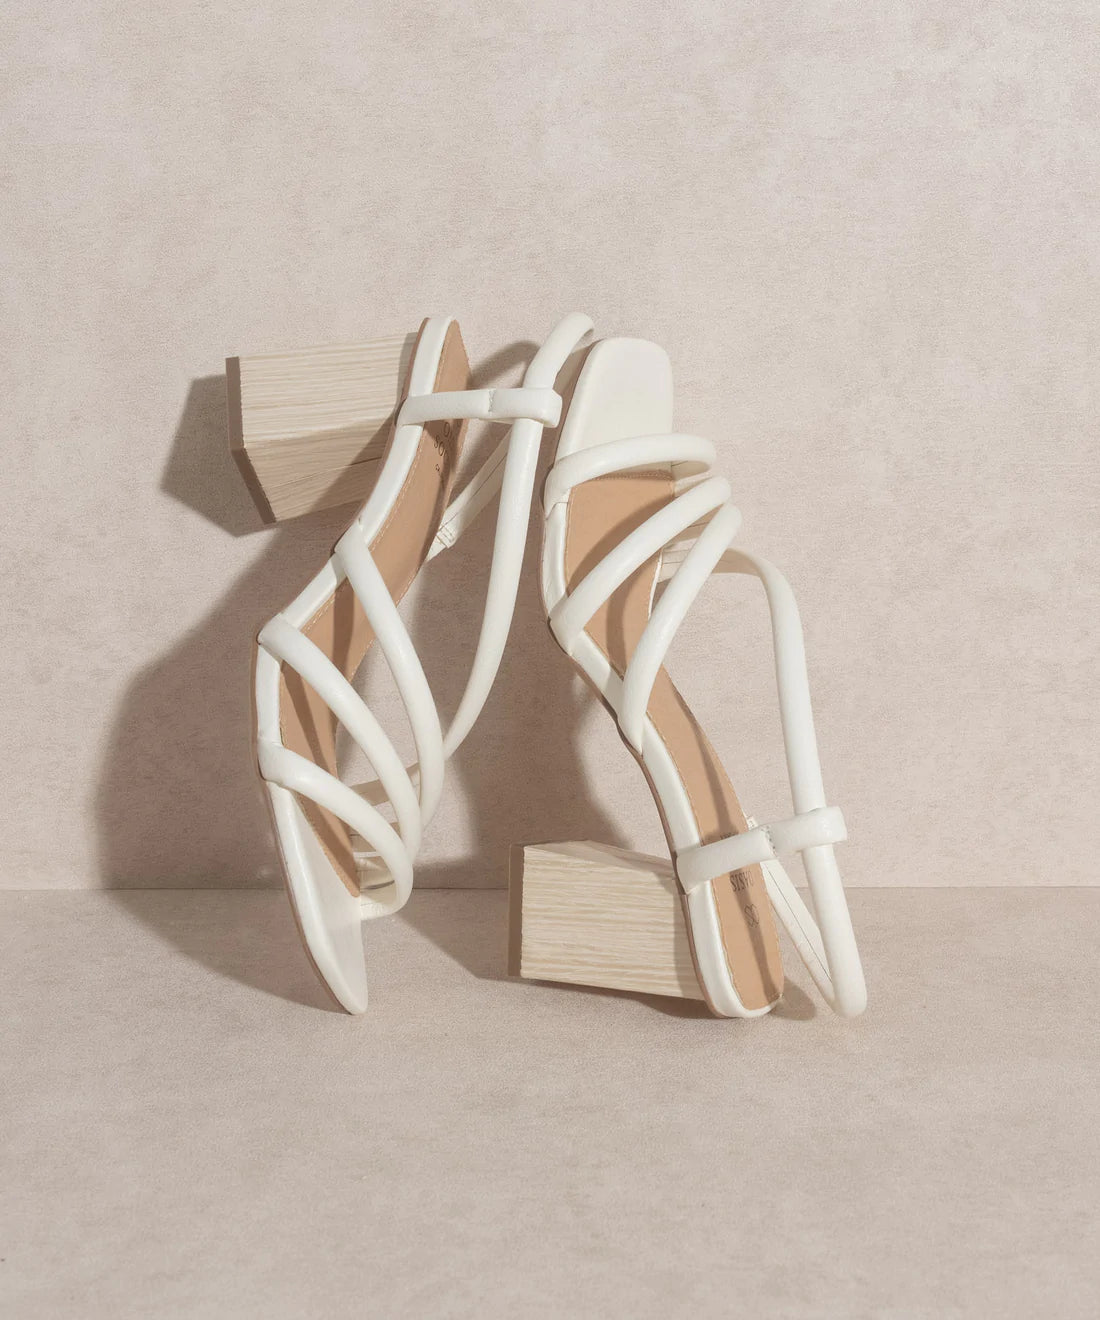 Kaitlyn Wooden Heel Sandal in White